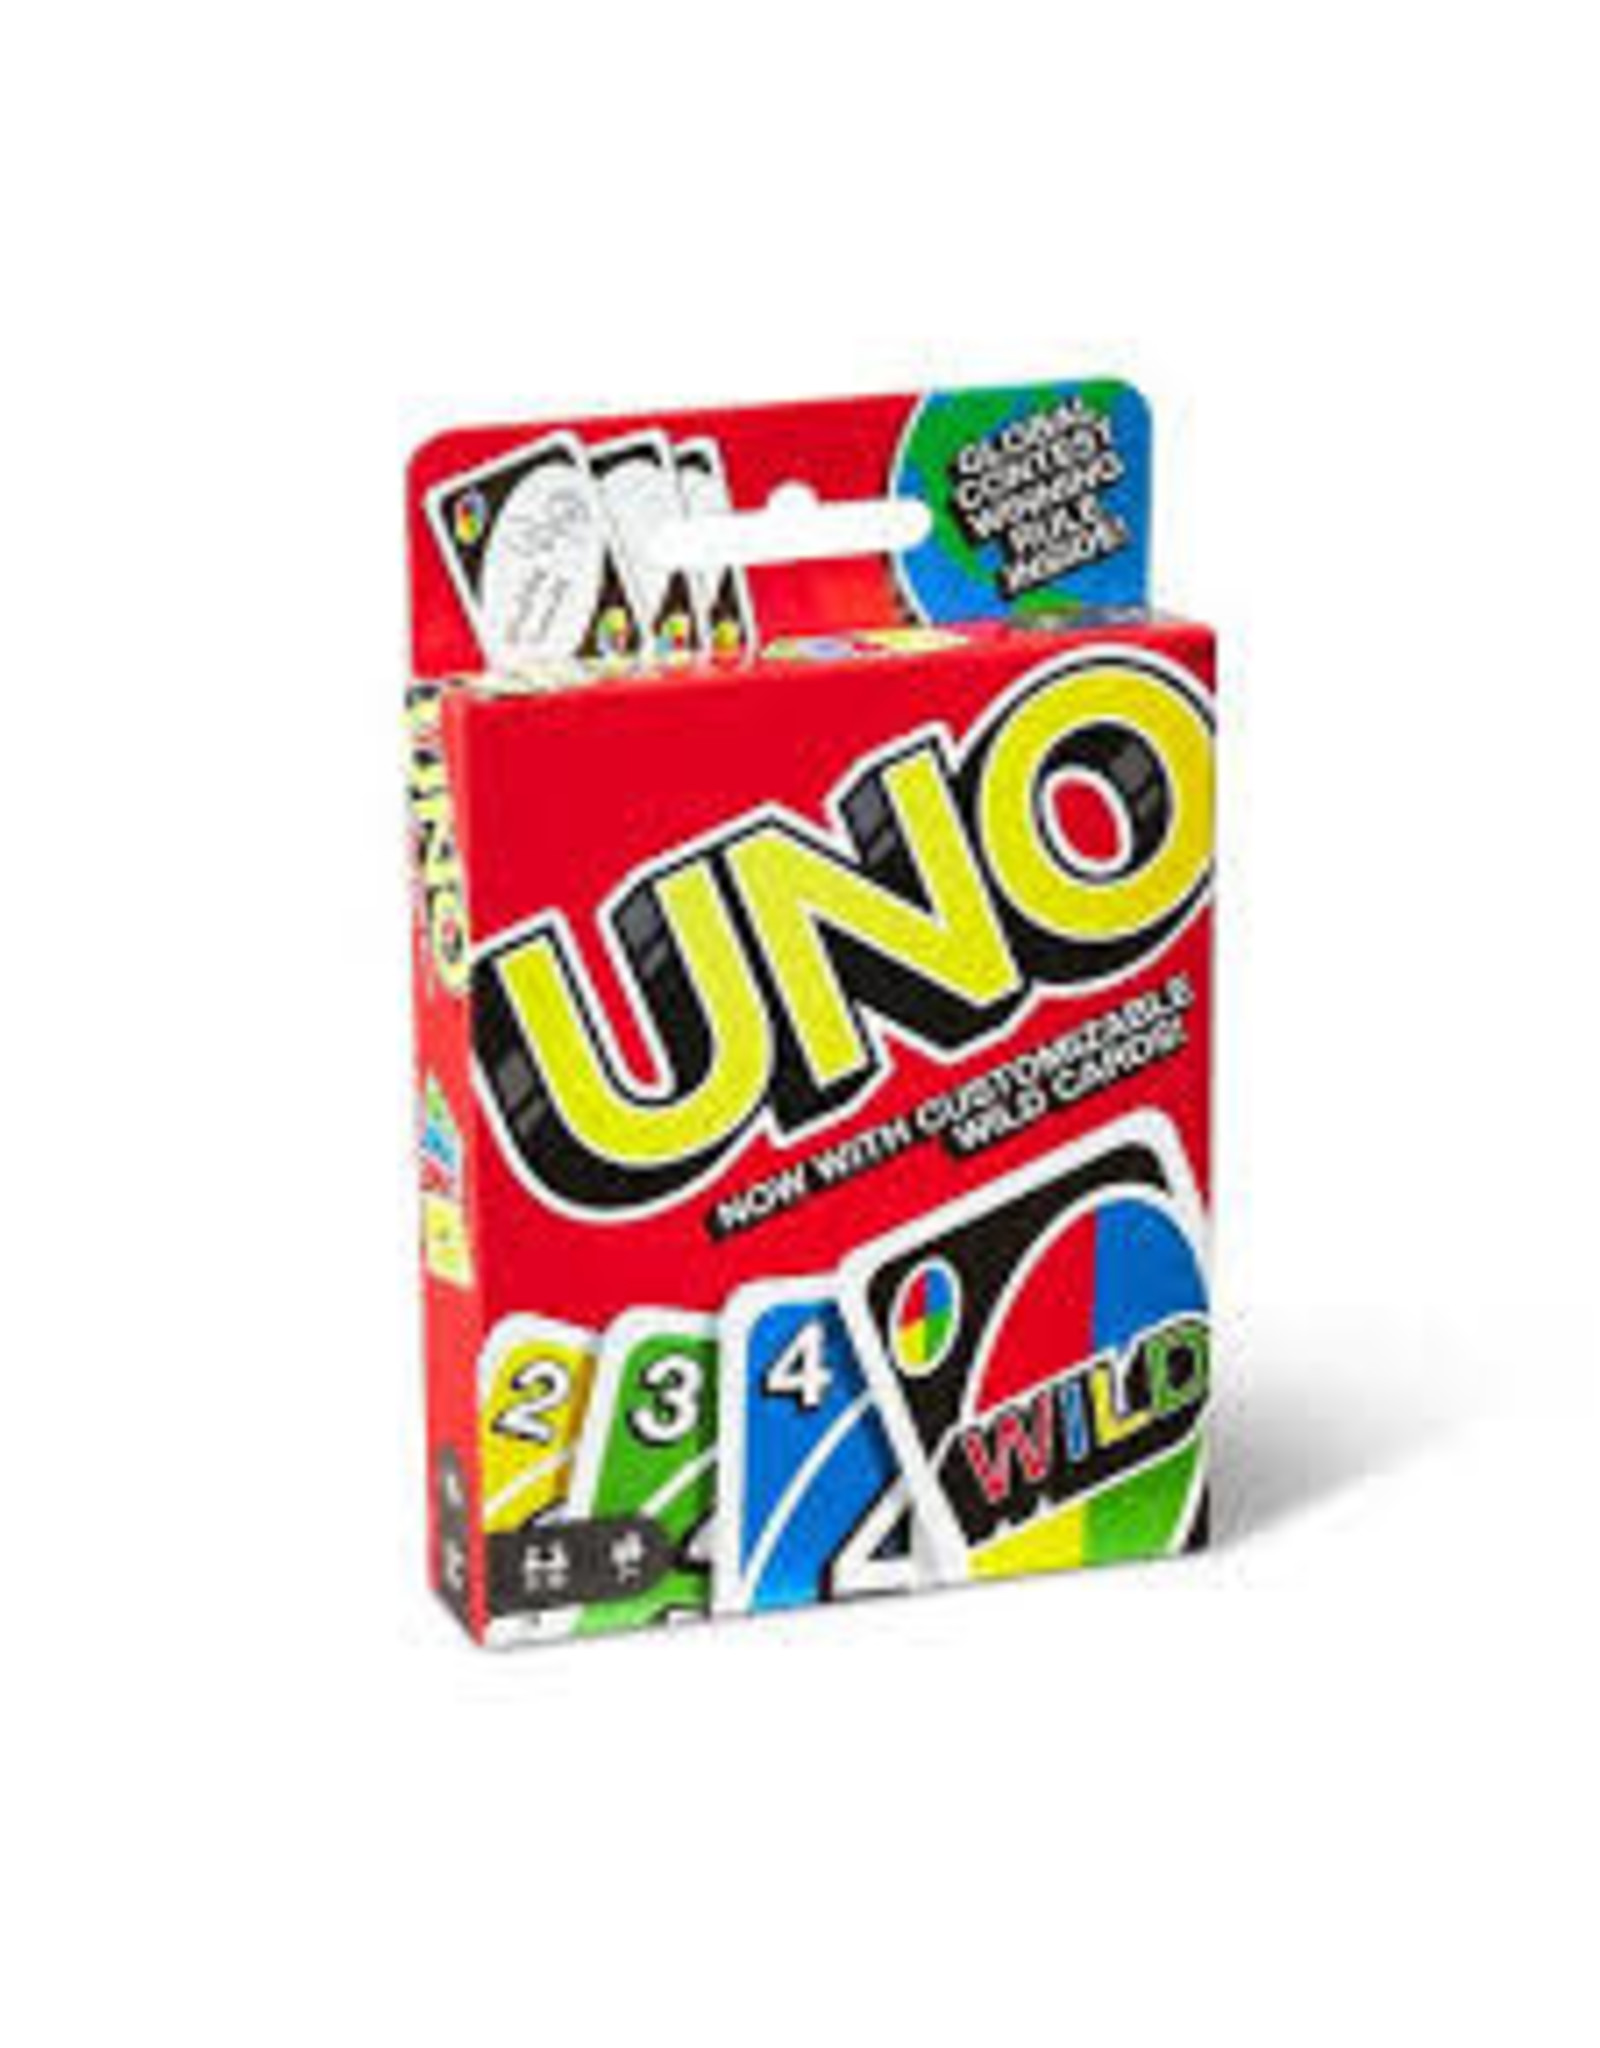 Mattel Uno: Card Game